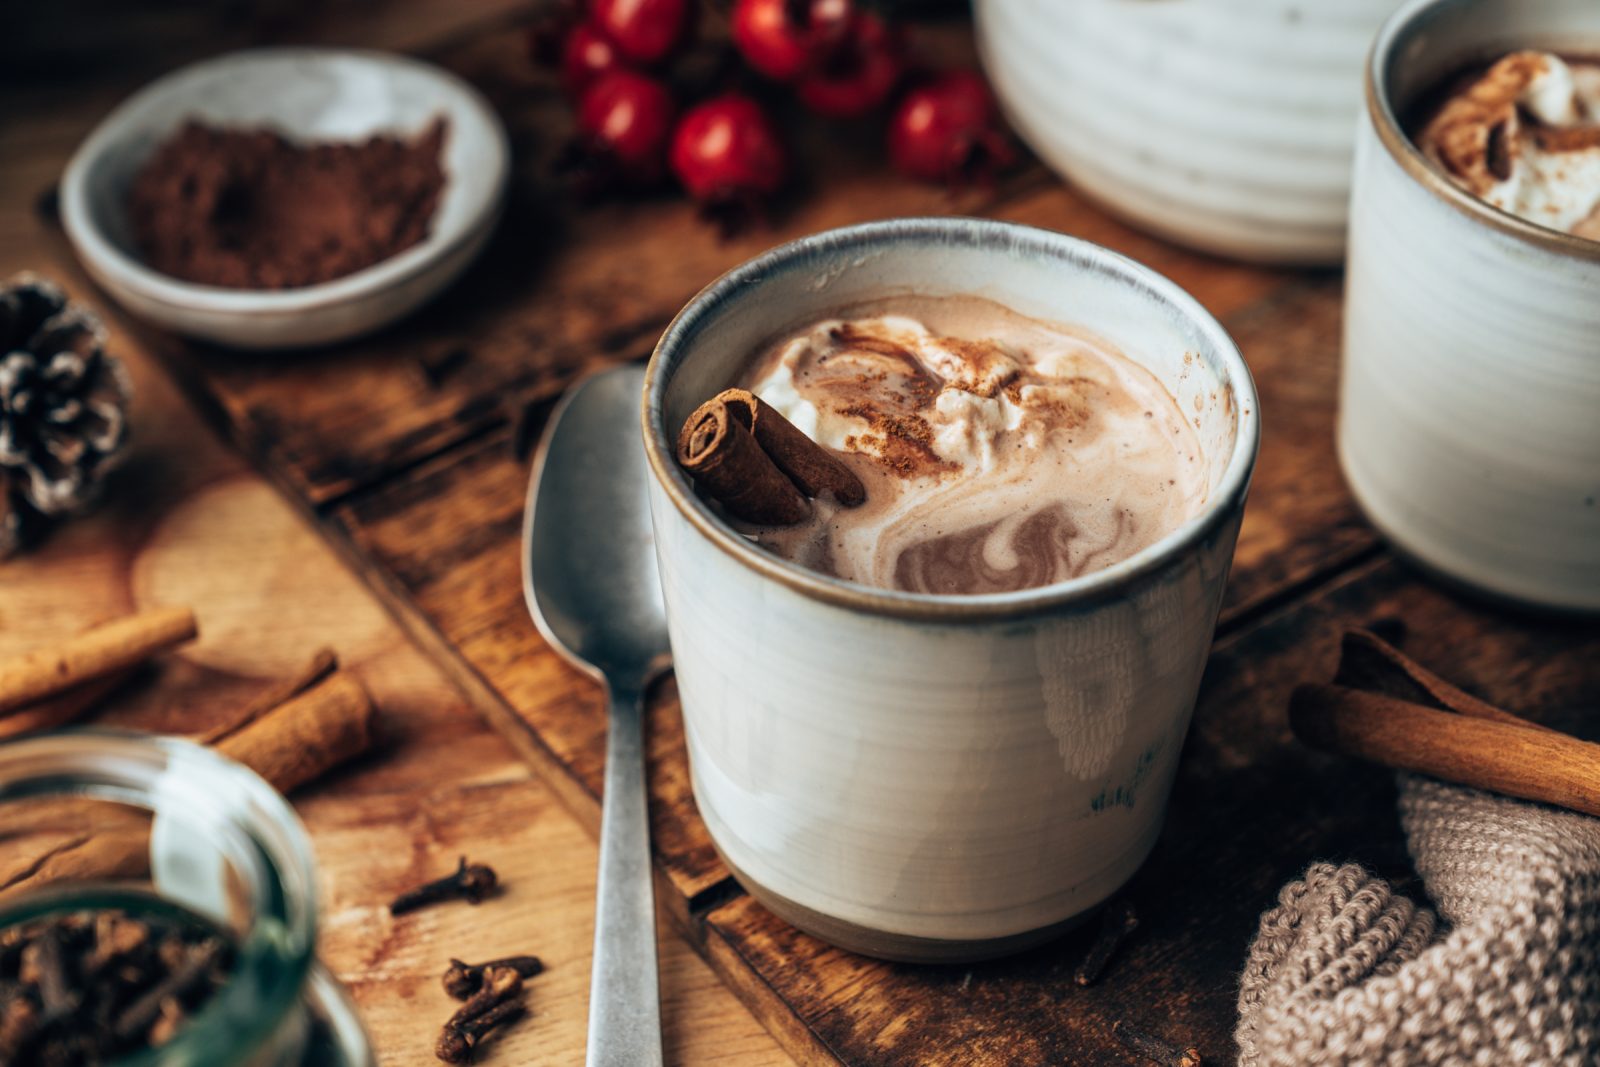 Gluehschokolade becks cacoa nude 9 | Taucht ein in die festliche Welt unserer Weihnachtsrezepte, die jeden Adventstisch in eine Tafel voller Freude und Genuss verwandelt. Wir laden euch ein, traditionelle Leckereien neu zu erleben und eure Lieben mit unwiderstehlichen Kreationen zu verwöhnen. Findet Inspiration für süße Plätzchen, herzhafte Braten und alles, was die Weihnachtszeit zu unserer Lielblingssaison macht. Lasst uns gemeinsam köstliche Weihnachtsleckereien kreieren – einfach, lecker und unvergesslich. Frohe Festtage und himmlisches Schlemmen wünschen euch eure Jungs!